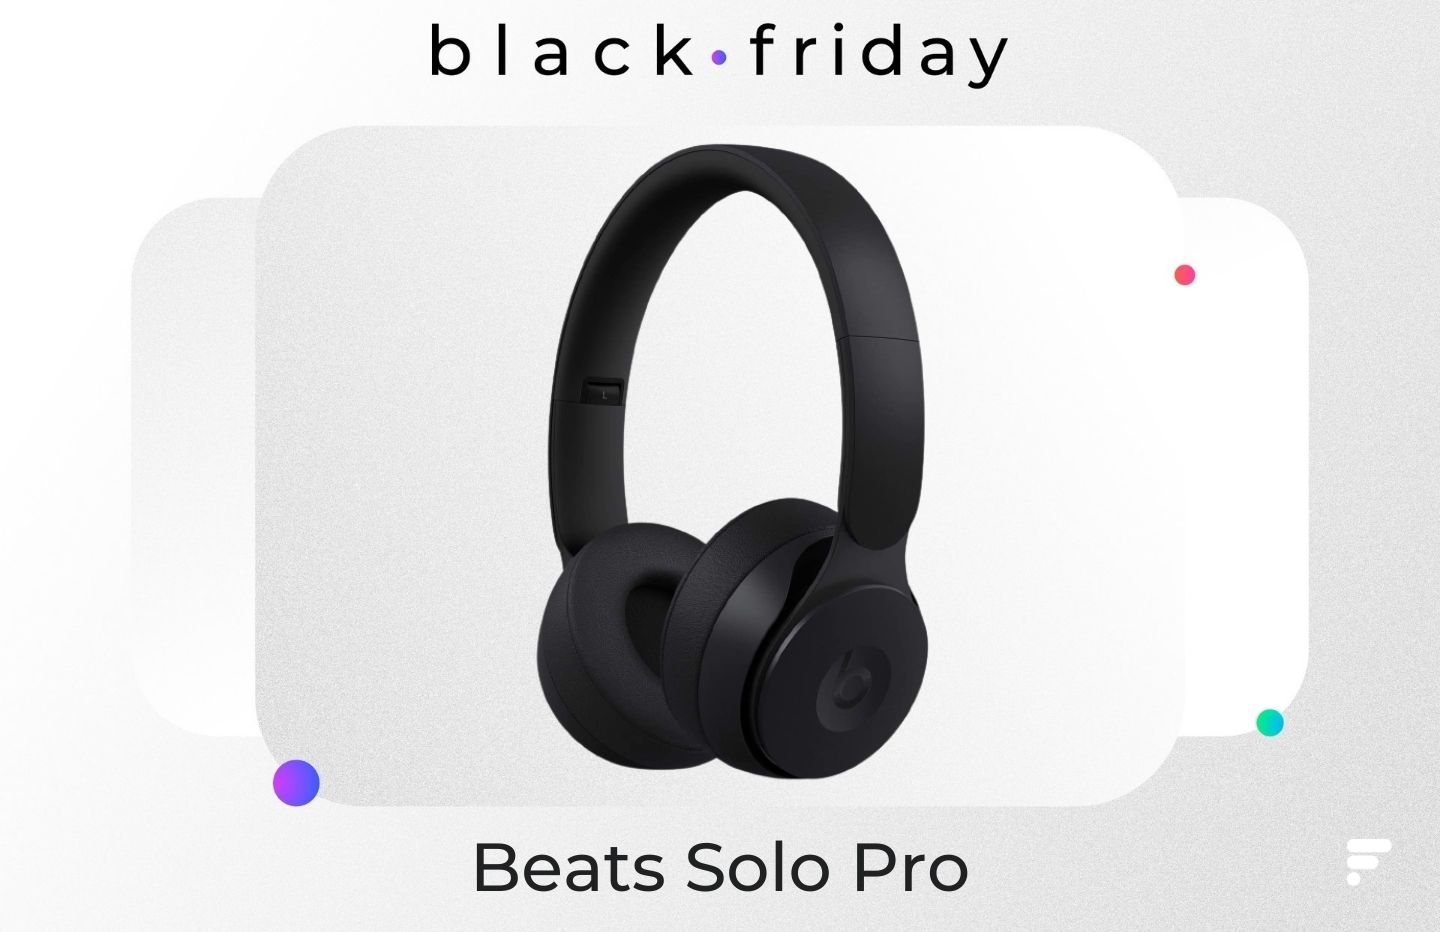 Le casque sans fil Beats Solo Pro est à moitié prix pour le Black Friday